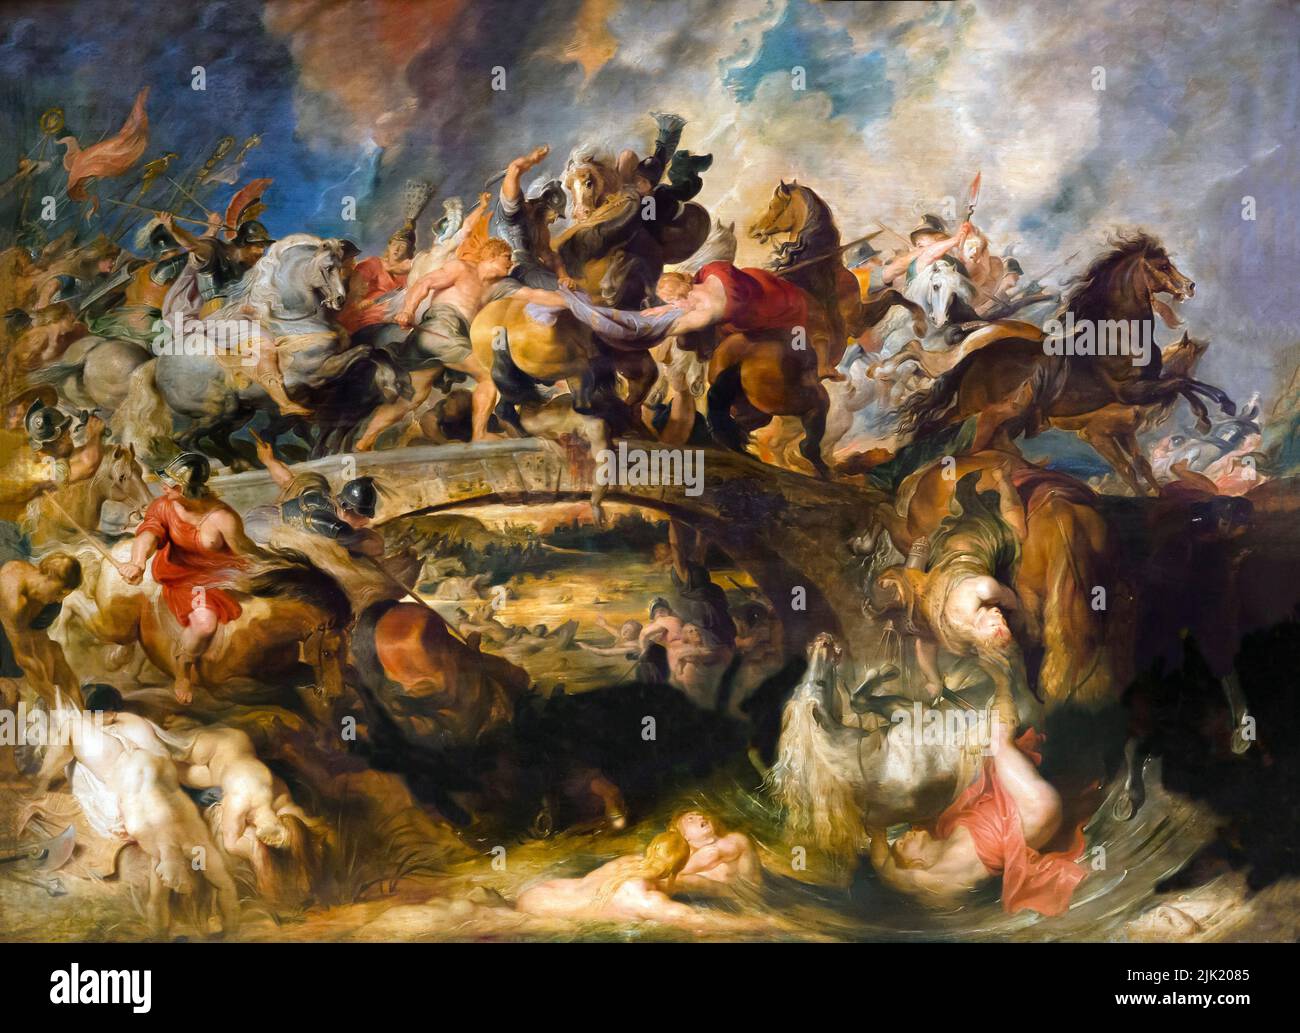 La bataille des Amazones, Peter Paul Rubens, 1618, Alte Pinakothek, Munich, Allemagne Banque D'Images